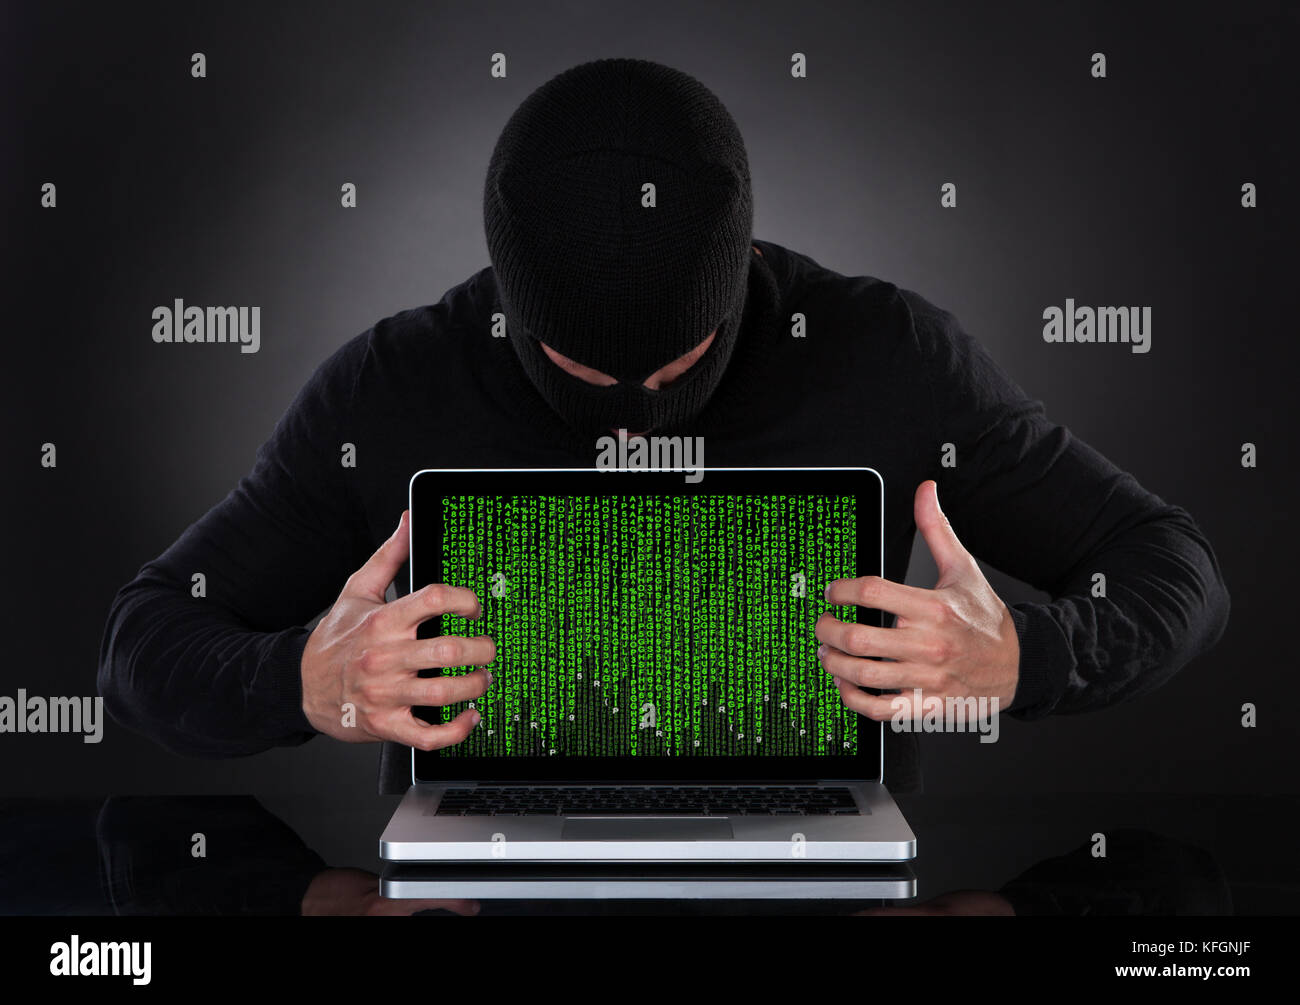 Hacker dans un balava debout dans l'obscurité voler furtivement des données d'un ordinateur portable ou insérer des logiciels espions dans une conce de sécurité en ligne et de risque Banque D'Images